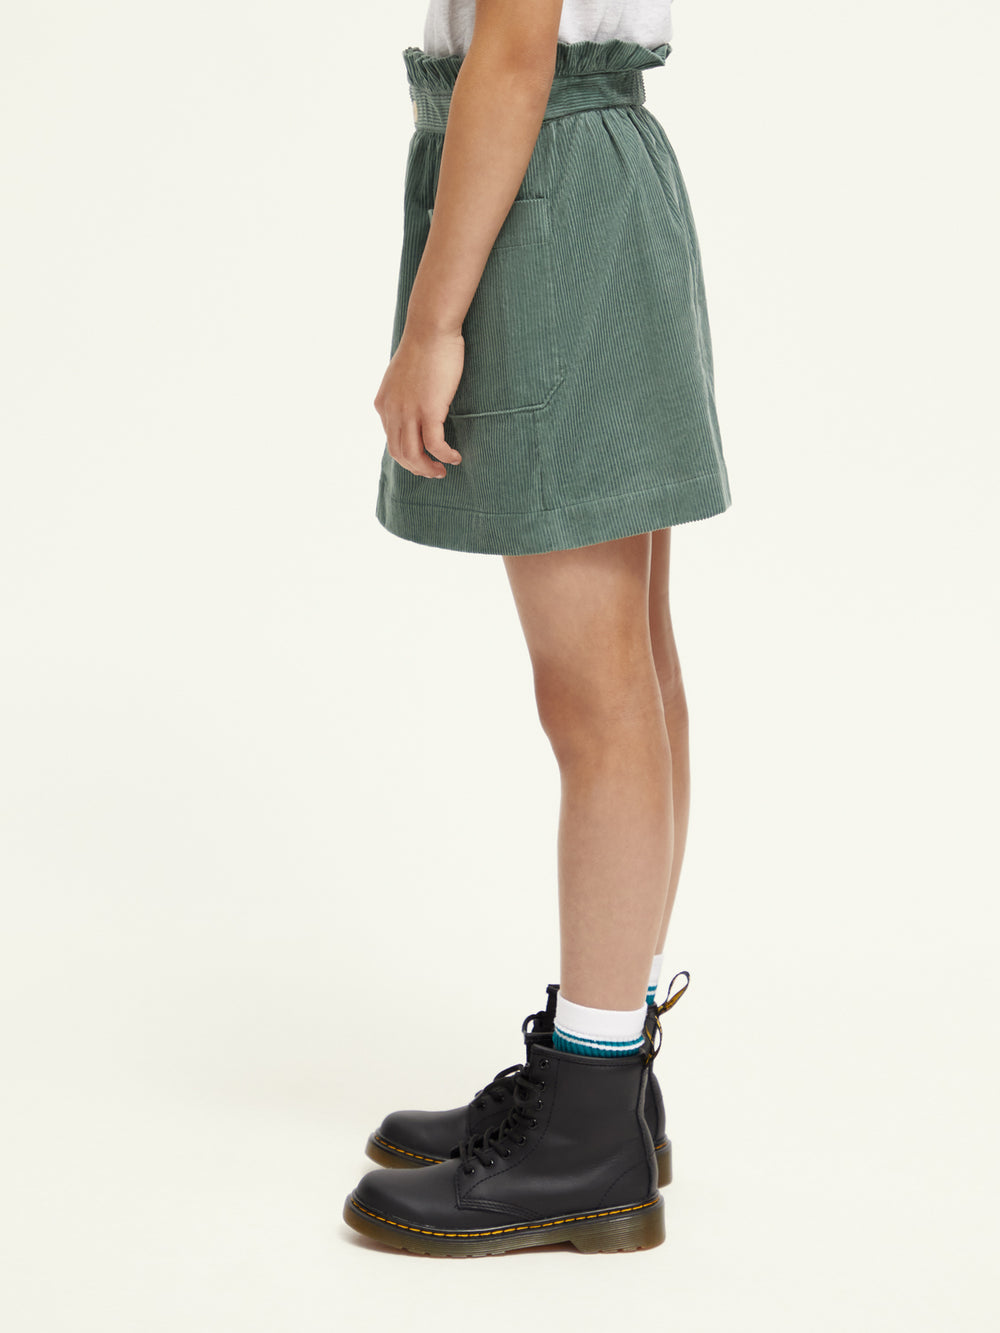 Kids - Corduroy mini skirt - Scotch & Soda NZ